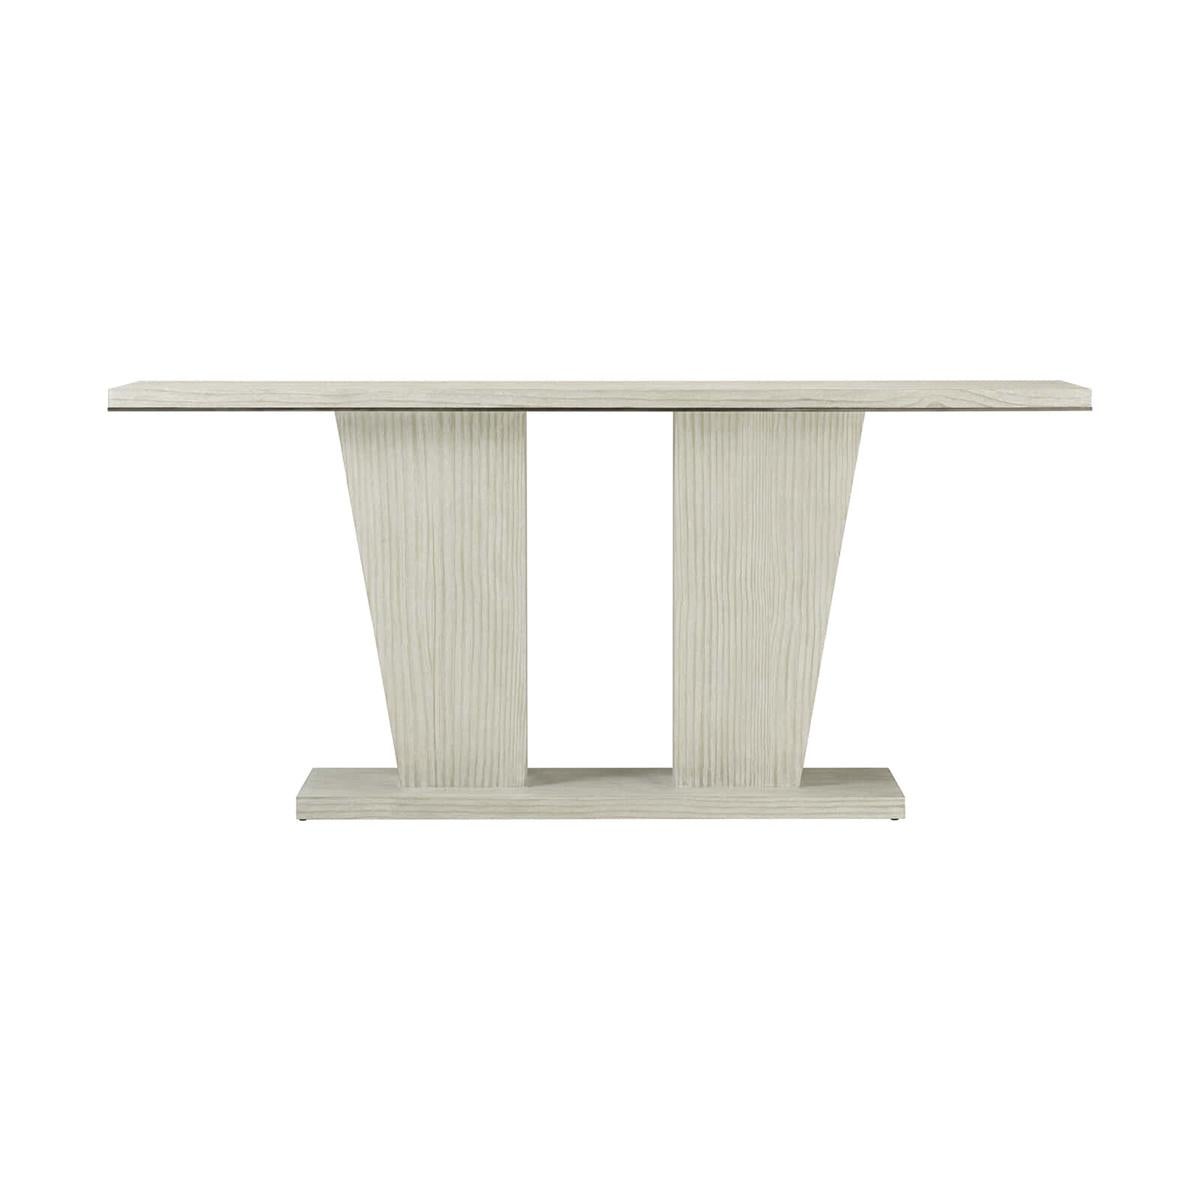 Une table console côtière moderne, délicatement fabriquée à partir de pin sur quartier, mise en valeur par une base à double piédestal et des supports décoratifs effilés, dans notre finition en pin cérusé brossé au fil de fer Sea Salt.

Dimensions